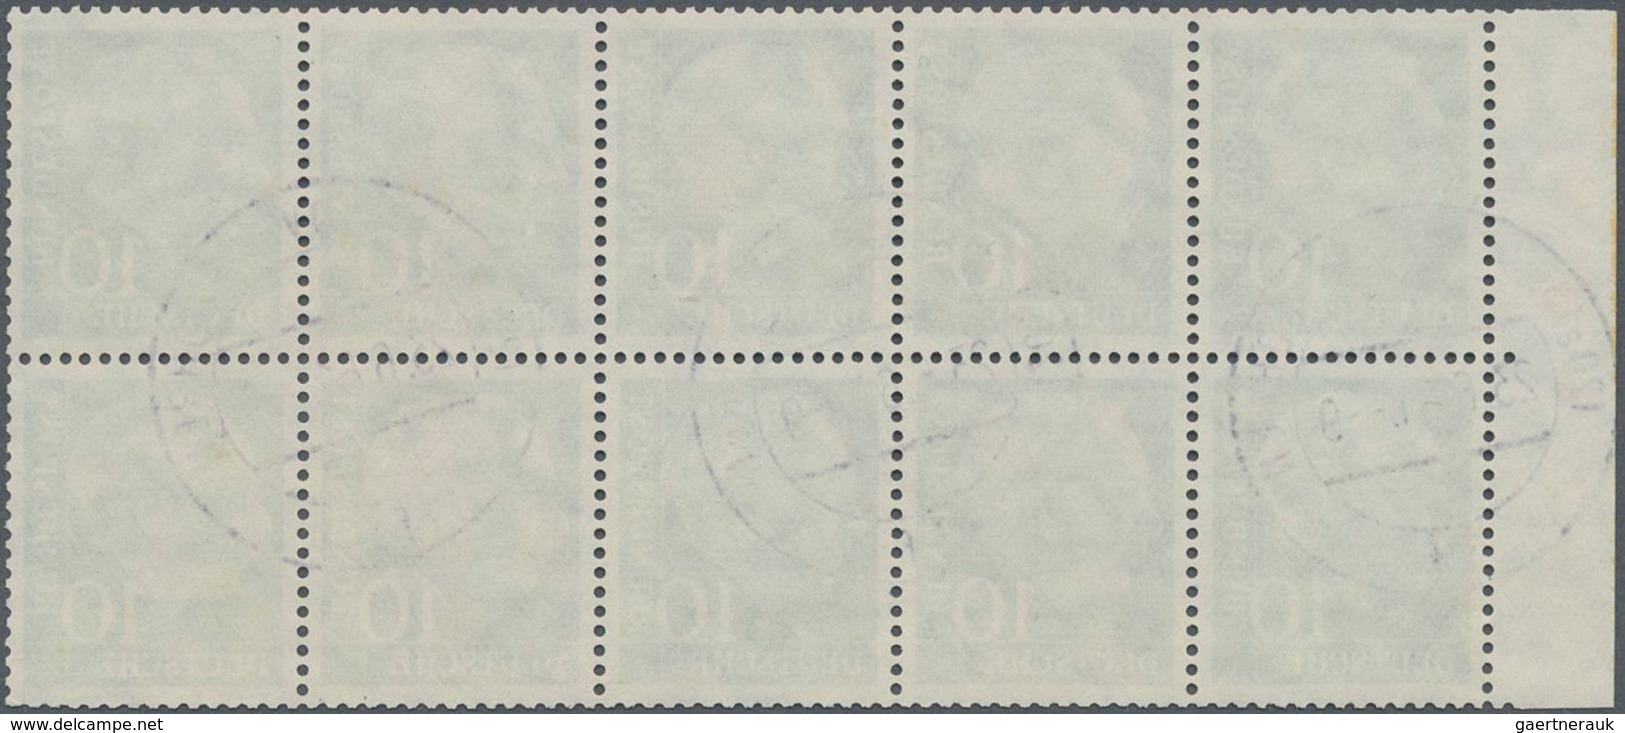 Bundesrepublik - Zusammendrucke: 1960, 10 Pfg. Heuss Heftchenblatt Mit Roter Bogenlaufnummer, Gestem - Zusammendrucke